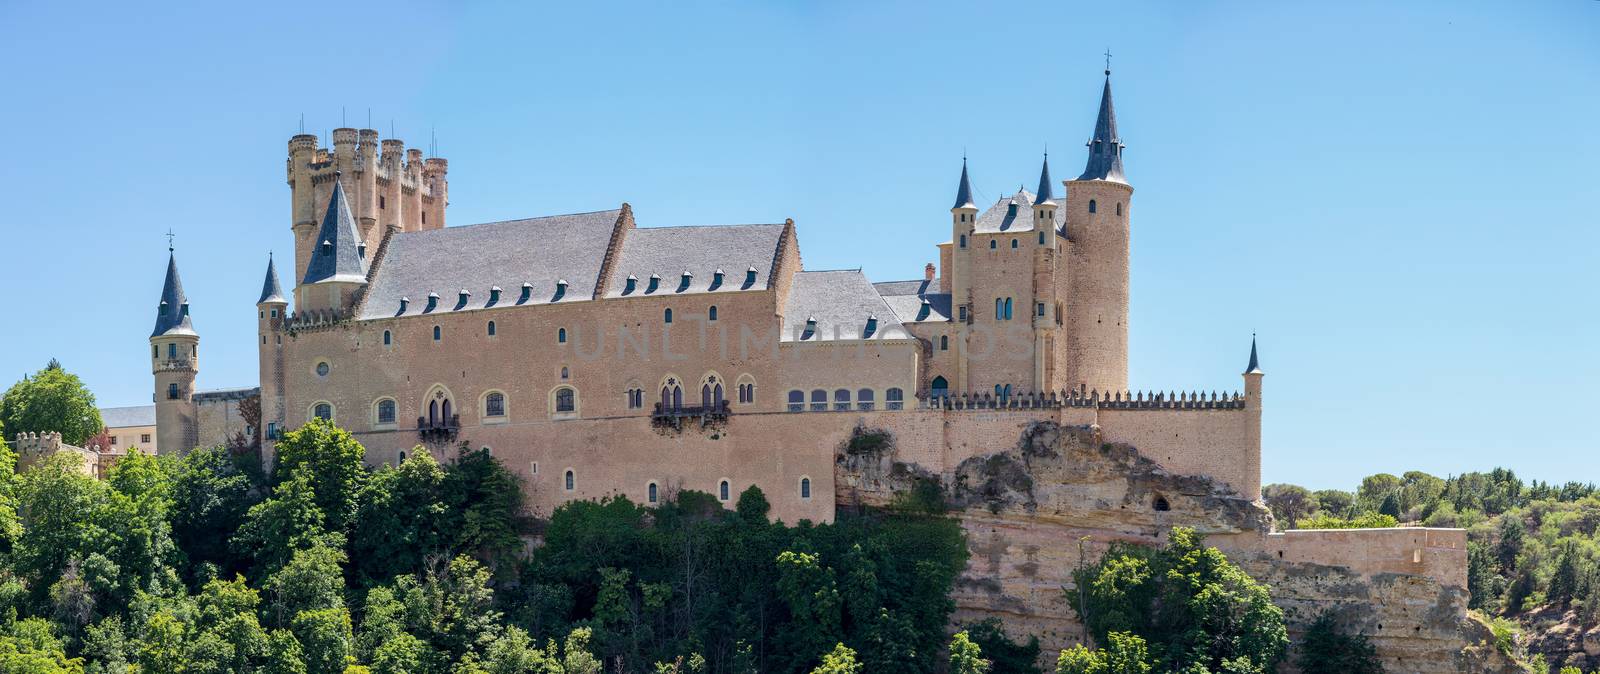 Alcazar of Segovia Spain by vichie81